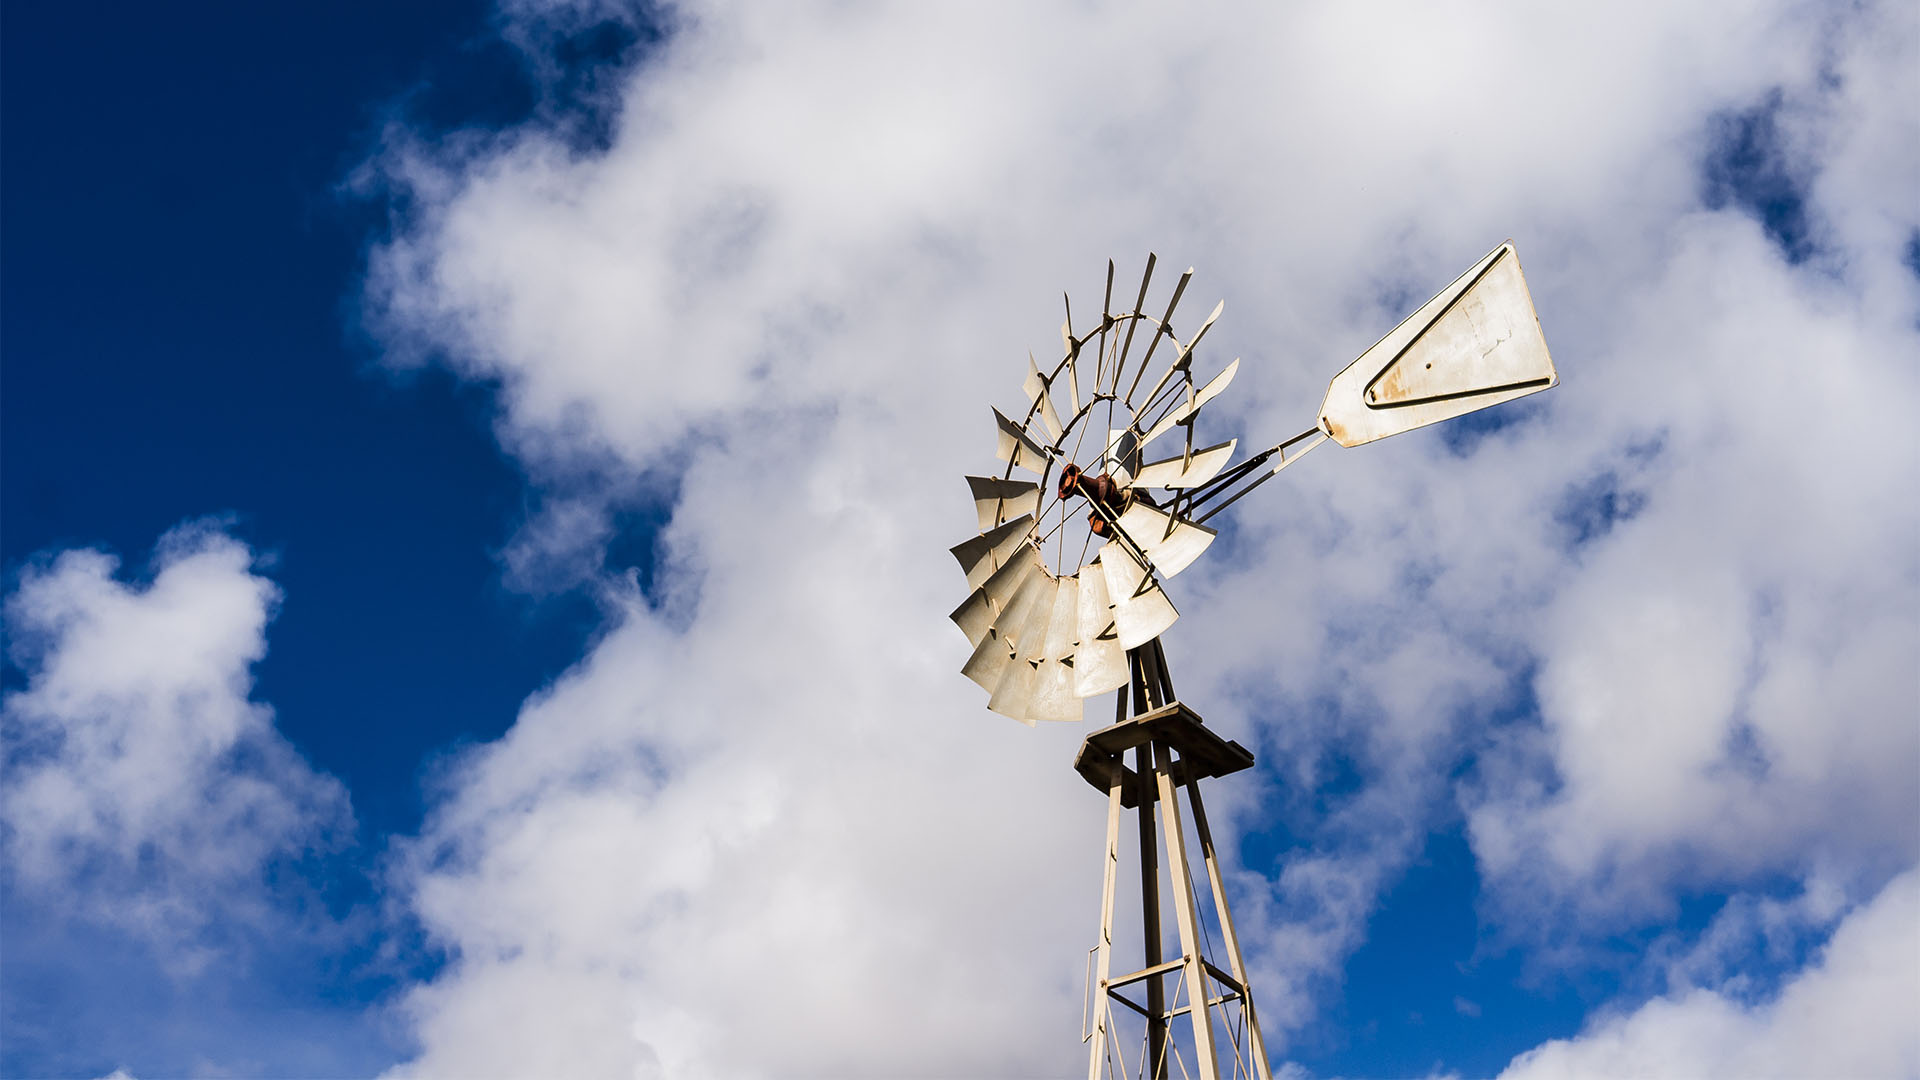 Das Chicago – die legendären Windräder der Aermotor Windmill Company Chicago auf Fuerteventura.